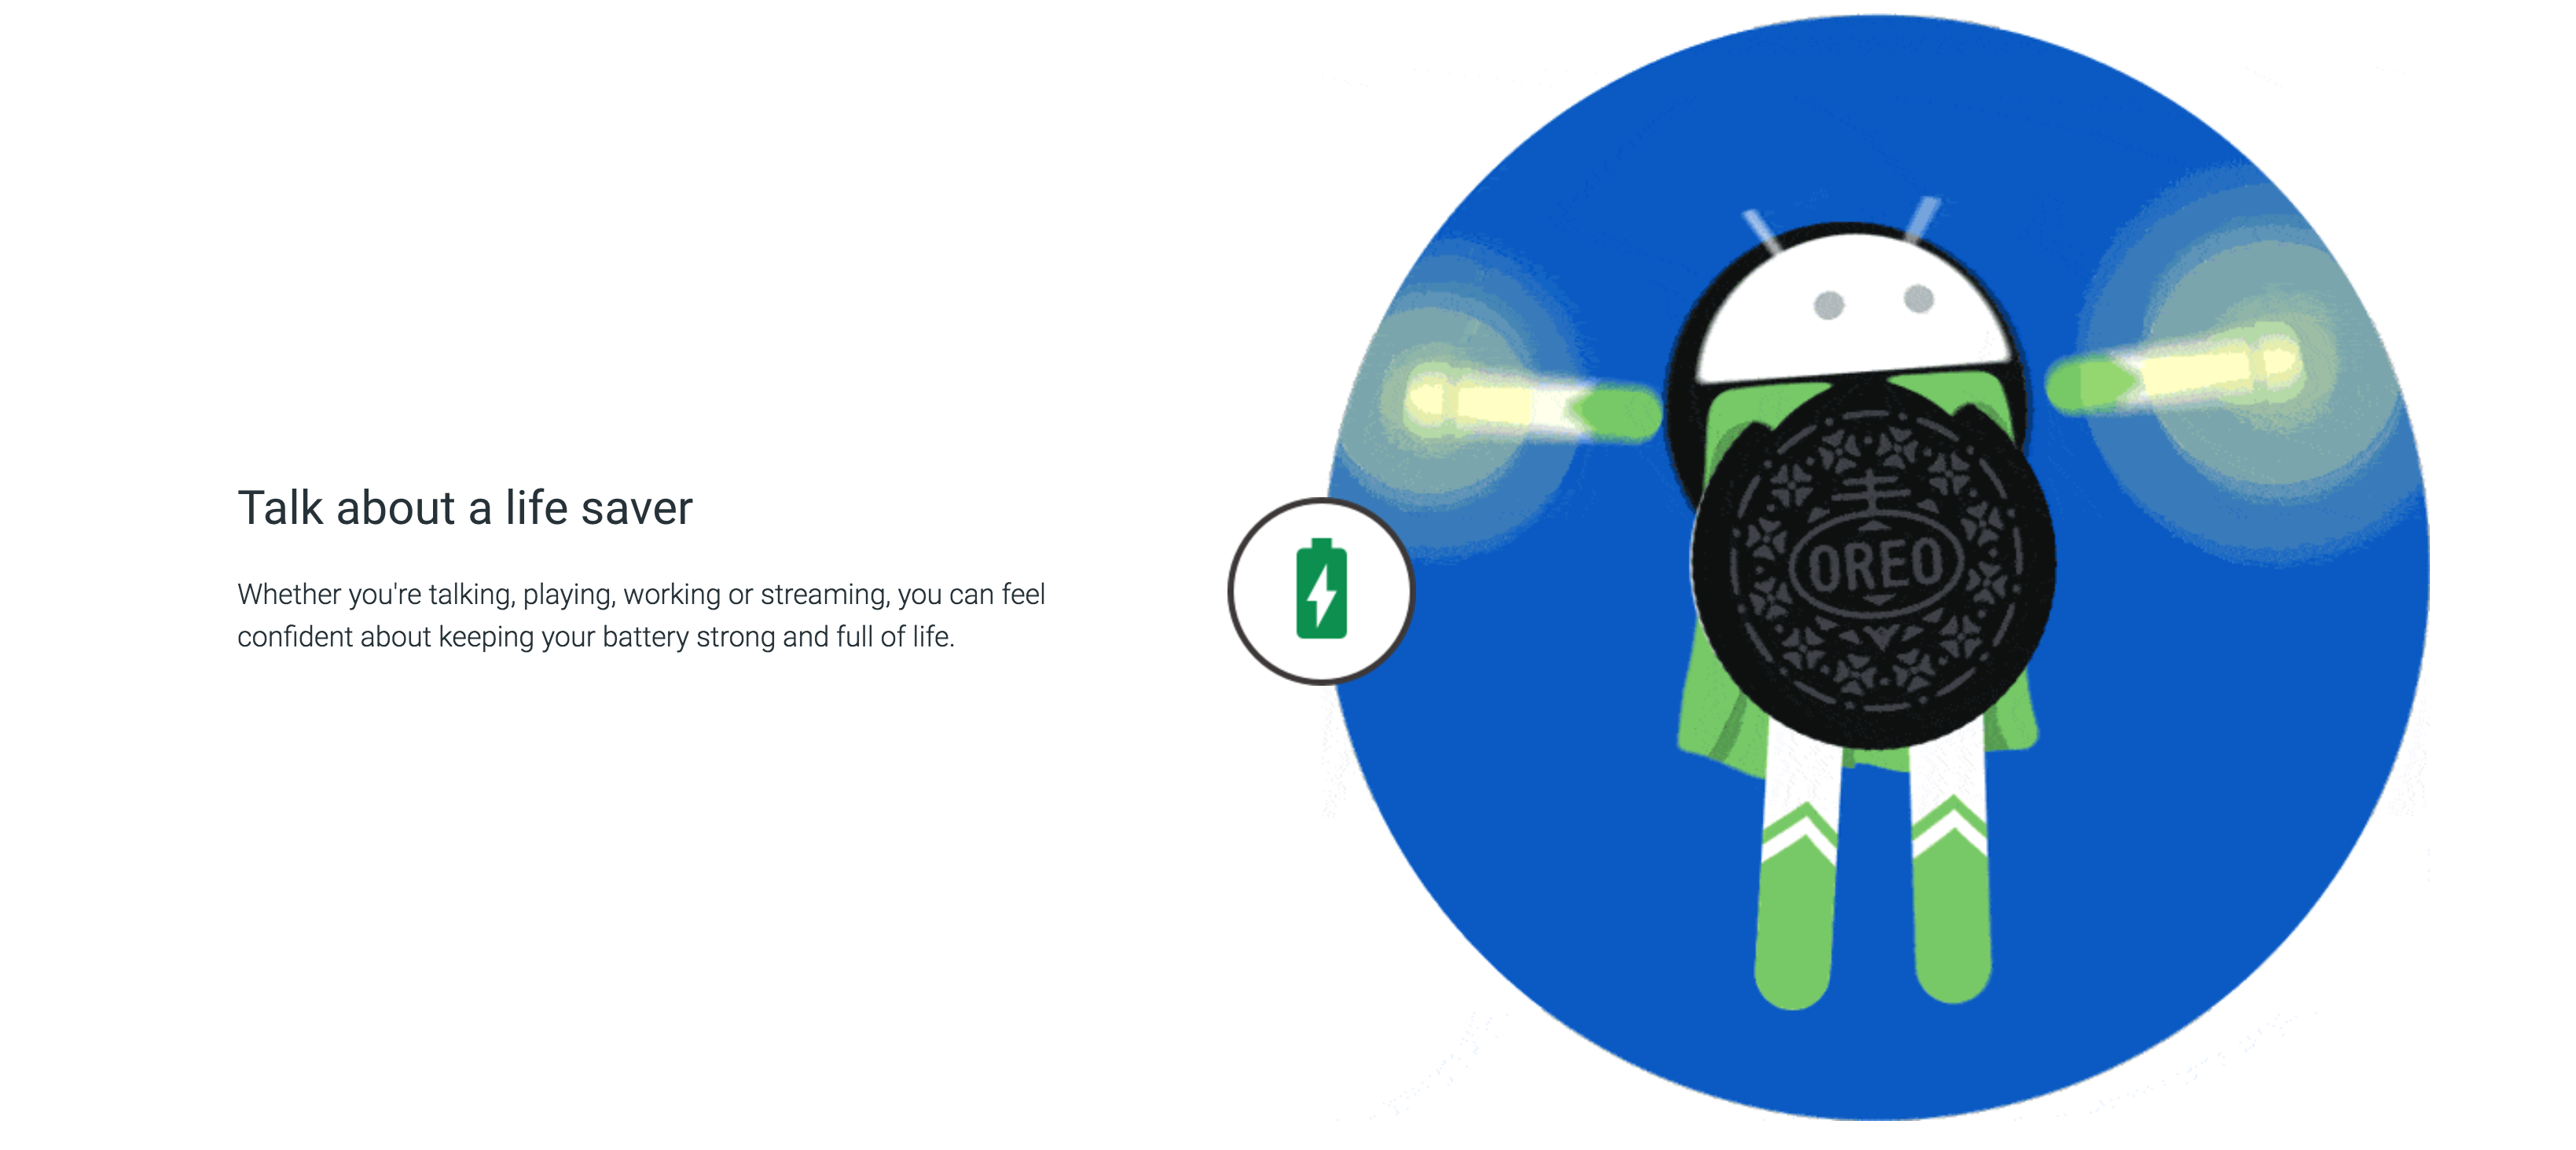 เจาะฟีเจอร์ใหม่ที่น่าสนใจใน Android 8.0 Oreo เร็วขึ้น 2 เท่า และกินแบตน้อยลง พร้อมปล่อยให้อัปเดตแล้ว!!!